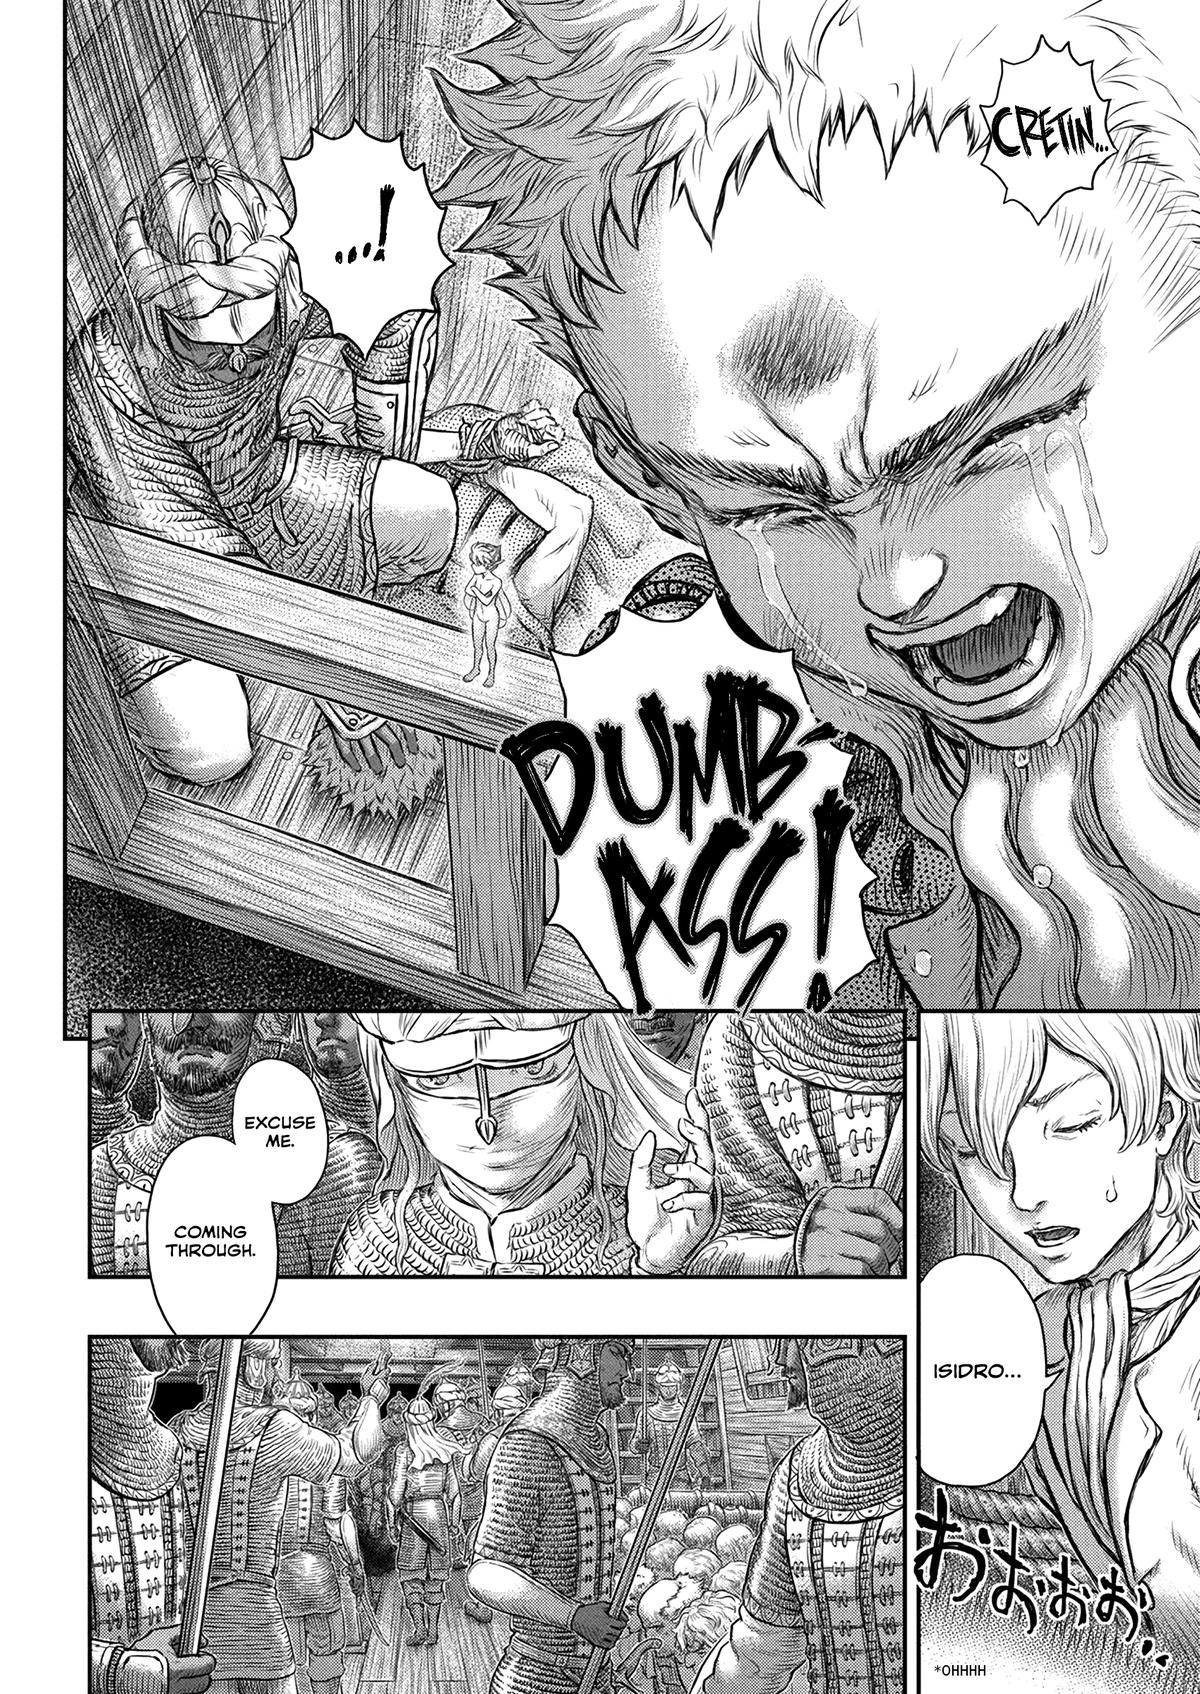 Berserk Manga Chapter 375 image 14